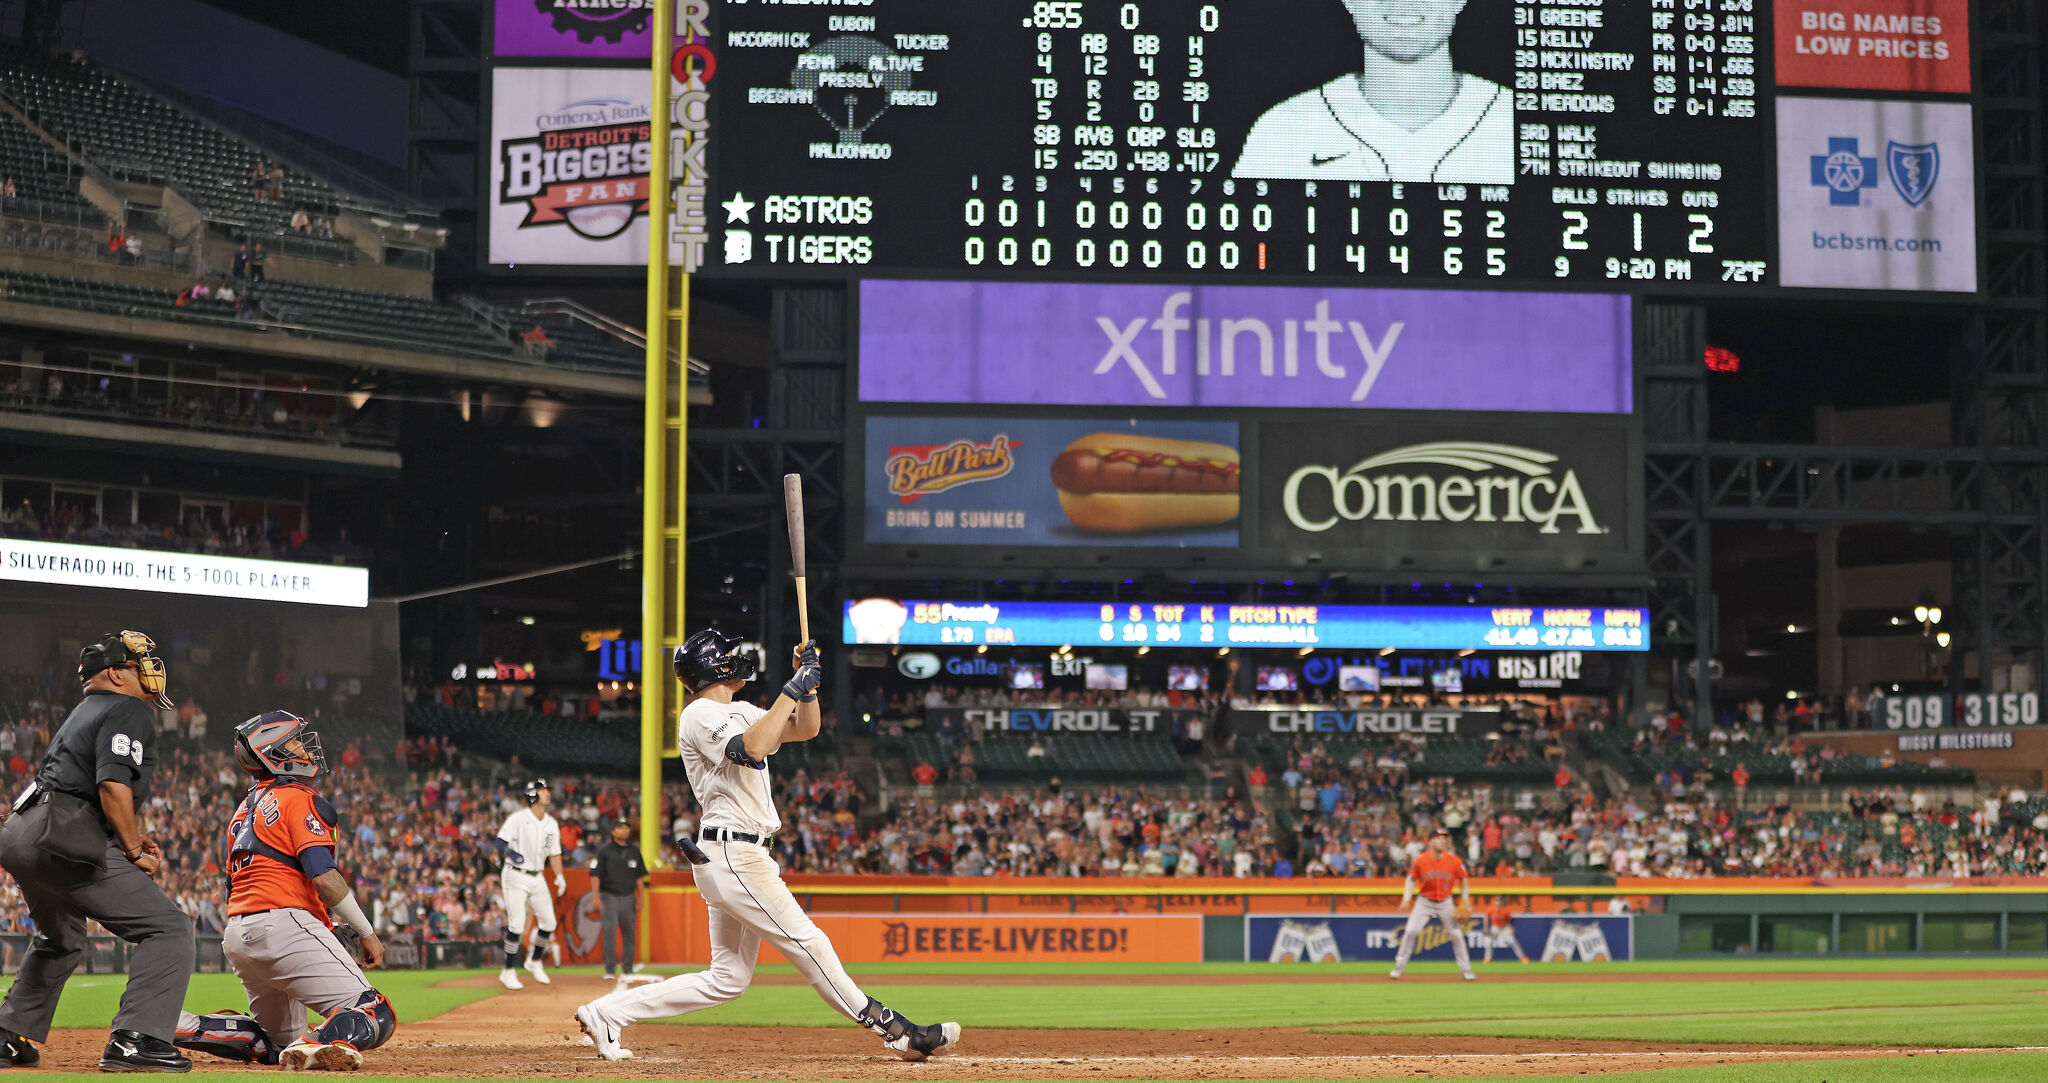 Short hits pinch-hit, three-run homer, Tigers beat Royals